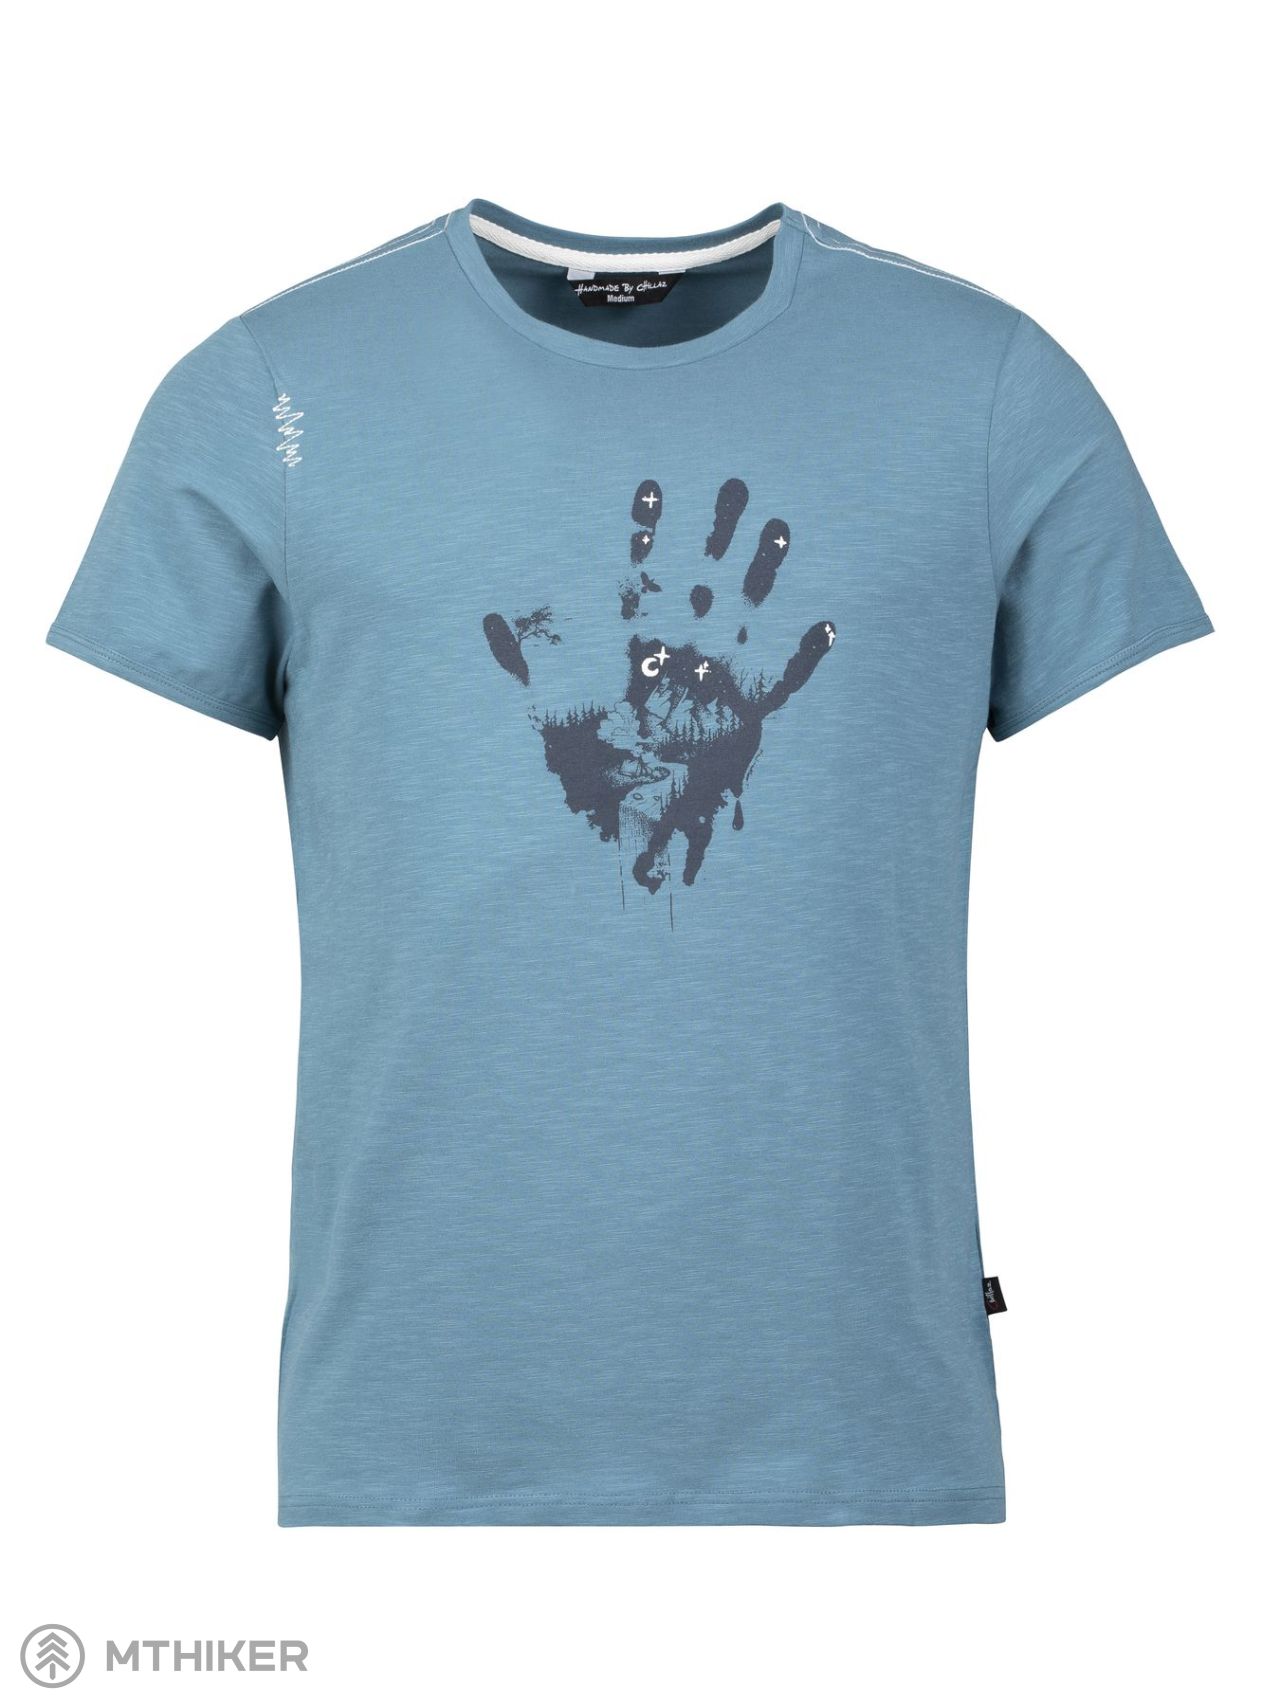 Chillaz HAND T-shirt, light blue